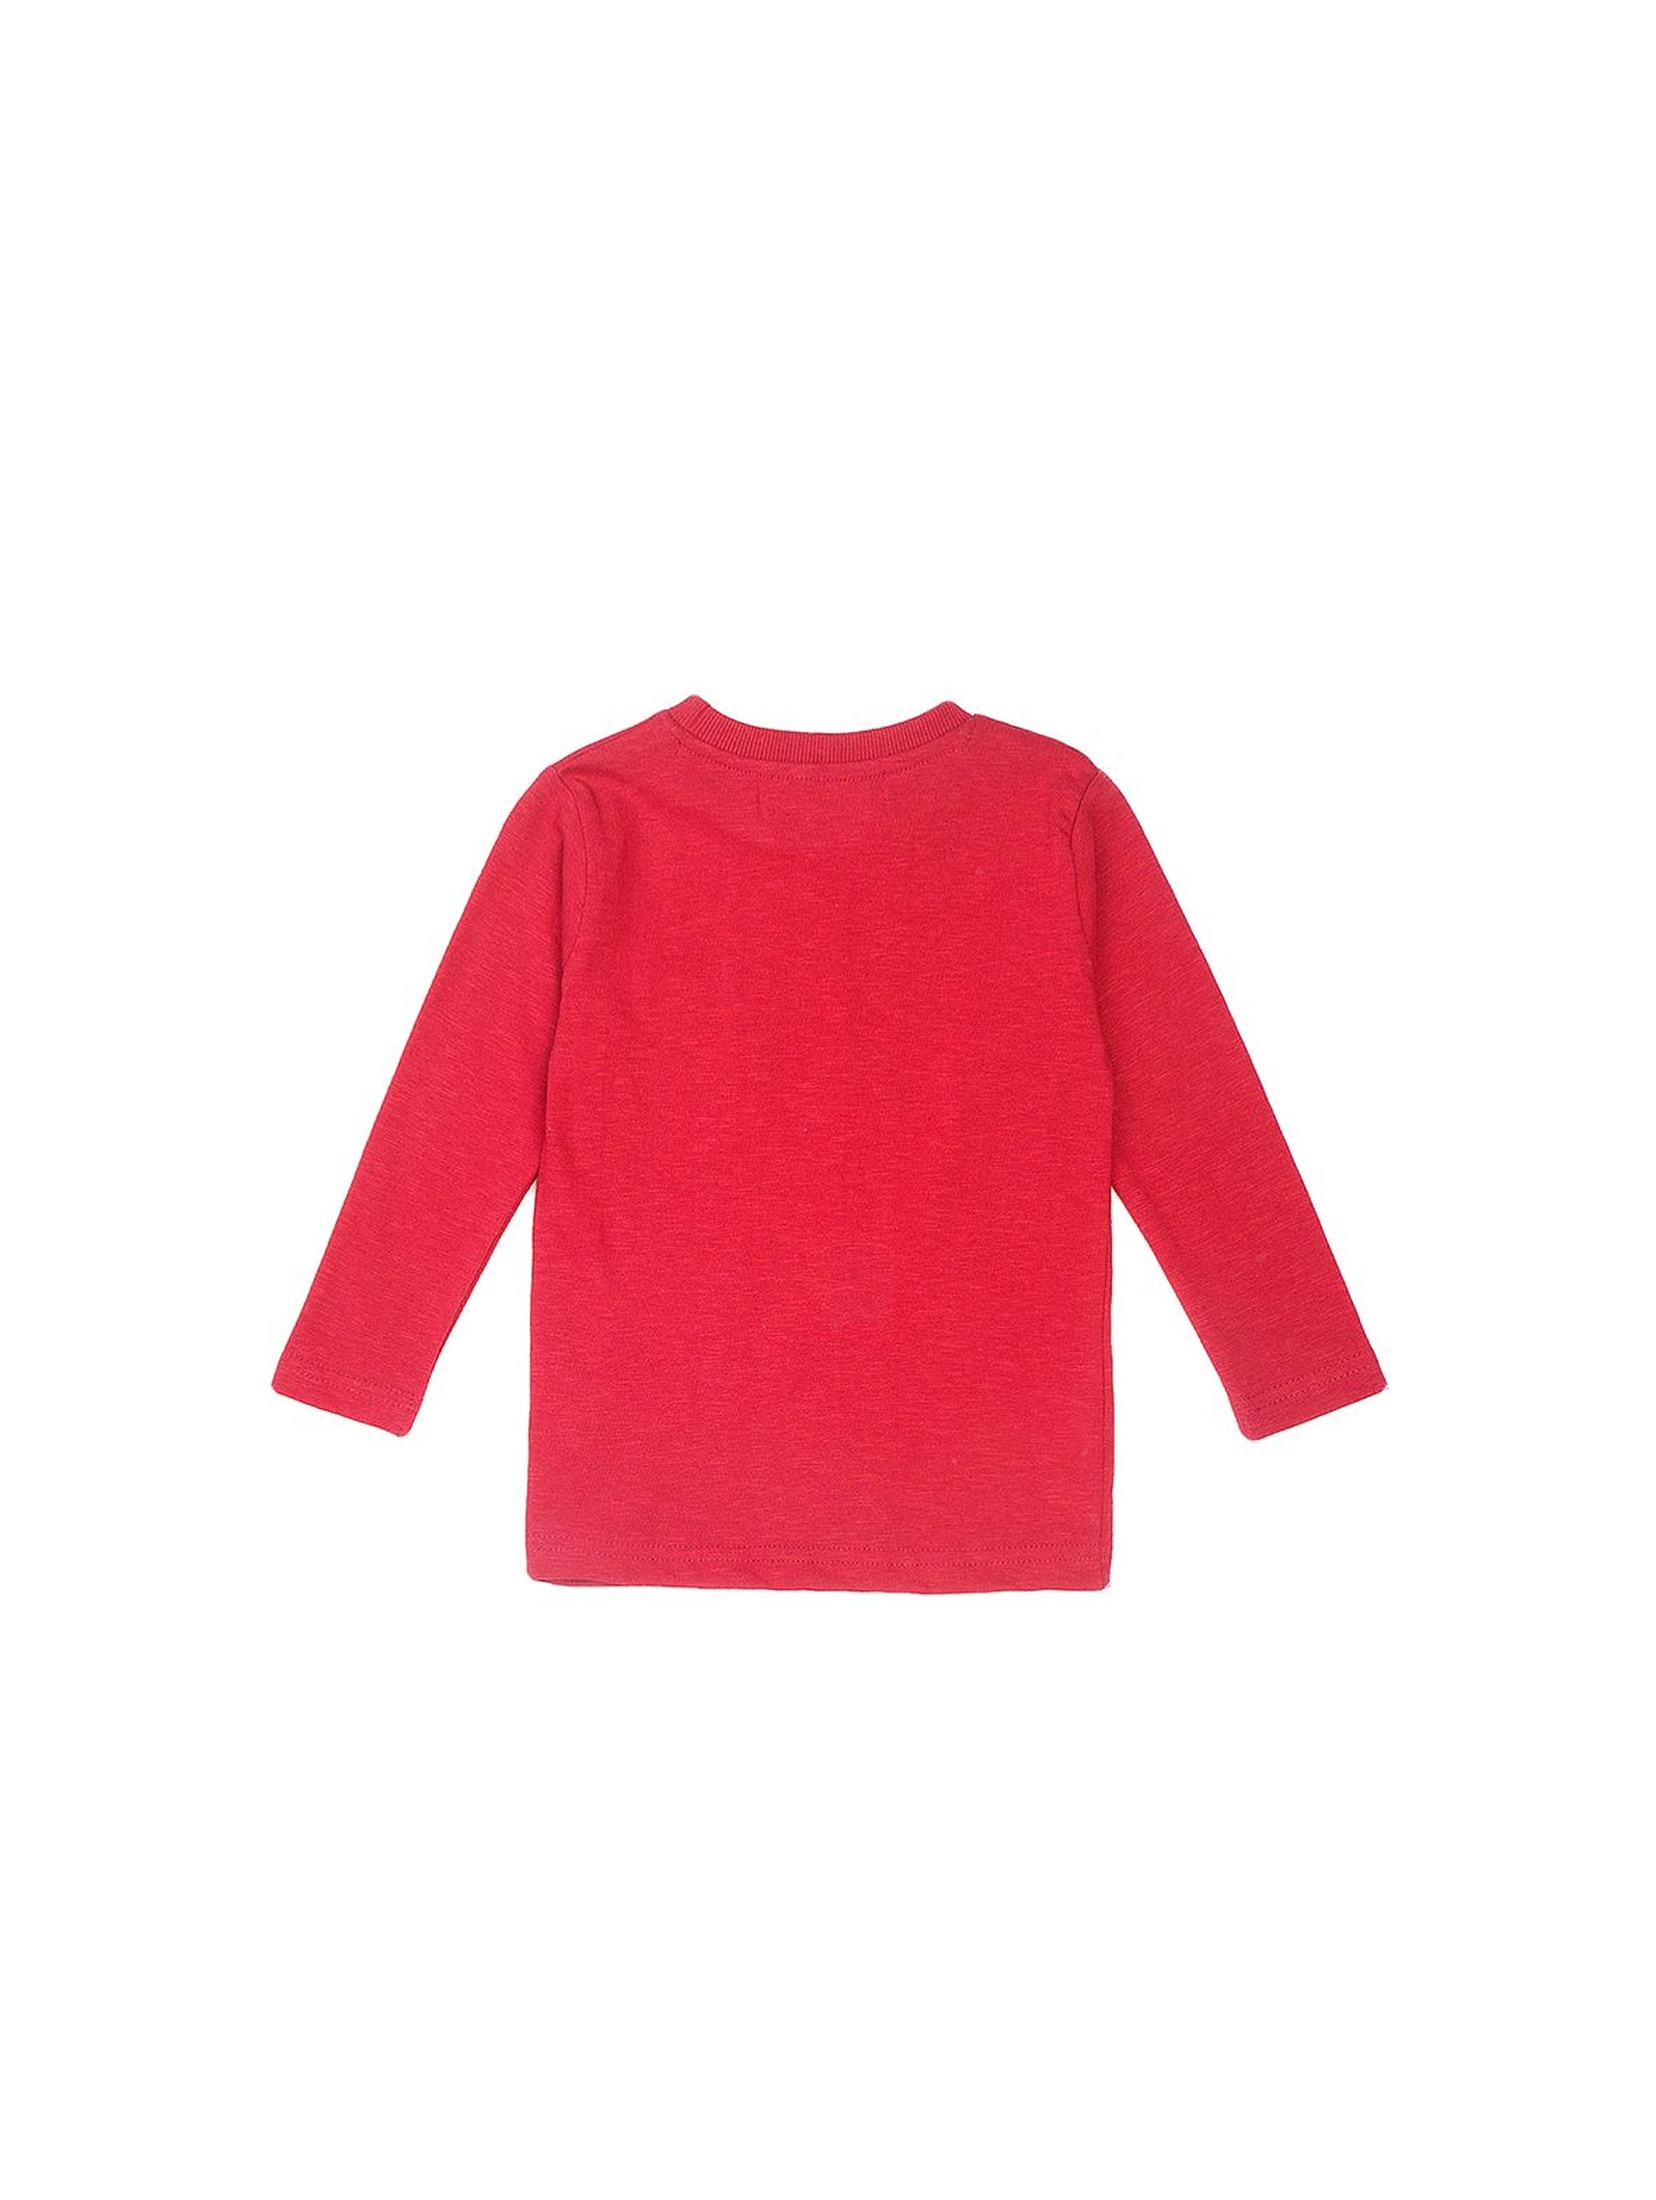 Bluzka chłopięca bawełniana z kieszonką - czerwona